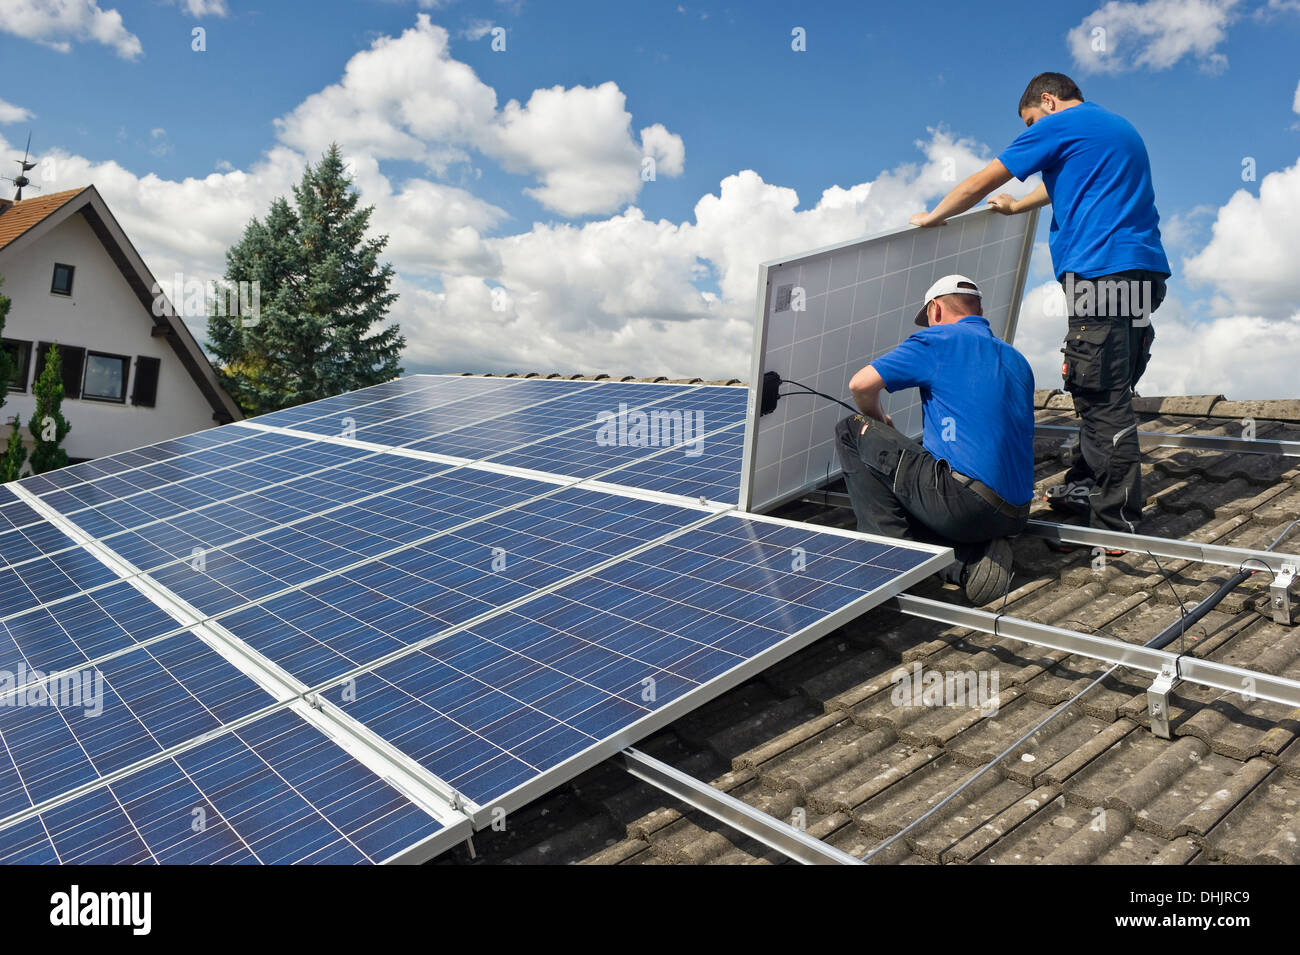 Deux personnes l'installation d'une centrale solaire, Freiburg im Breisgau, Forêt-Noire, Bade-Wurtemberg, Allemagne, Europe Banque D'Images